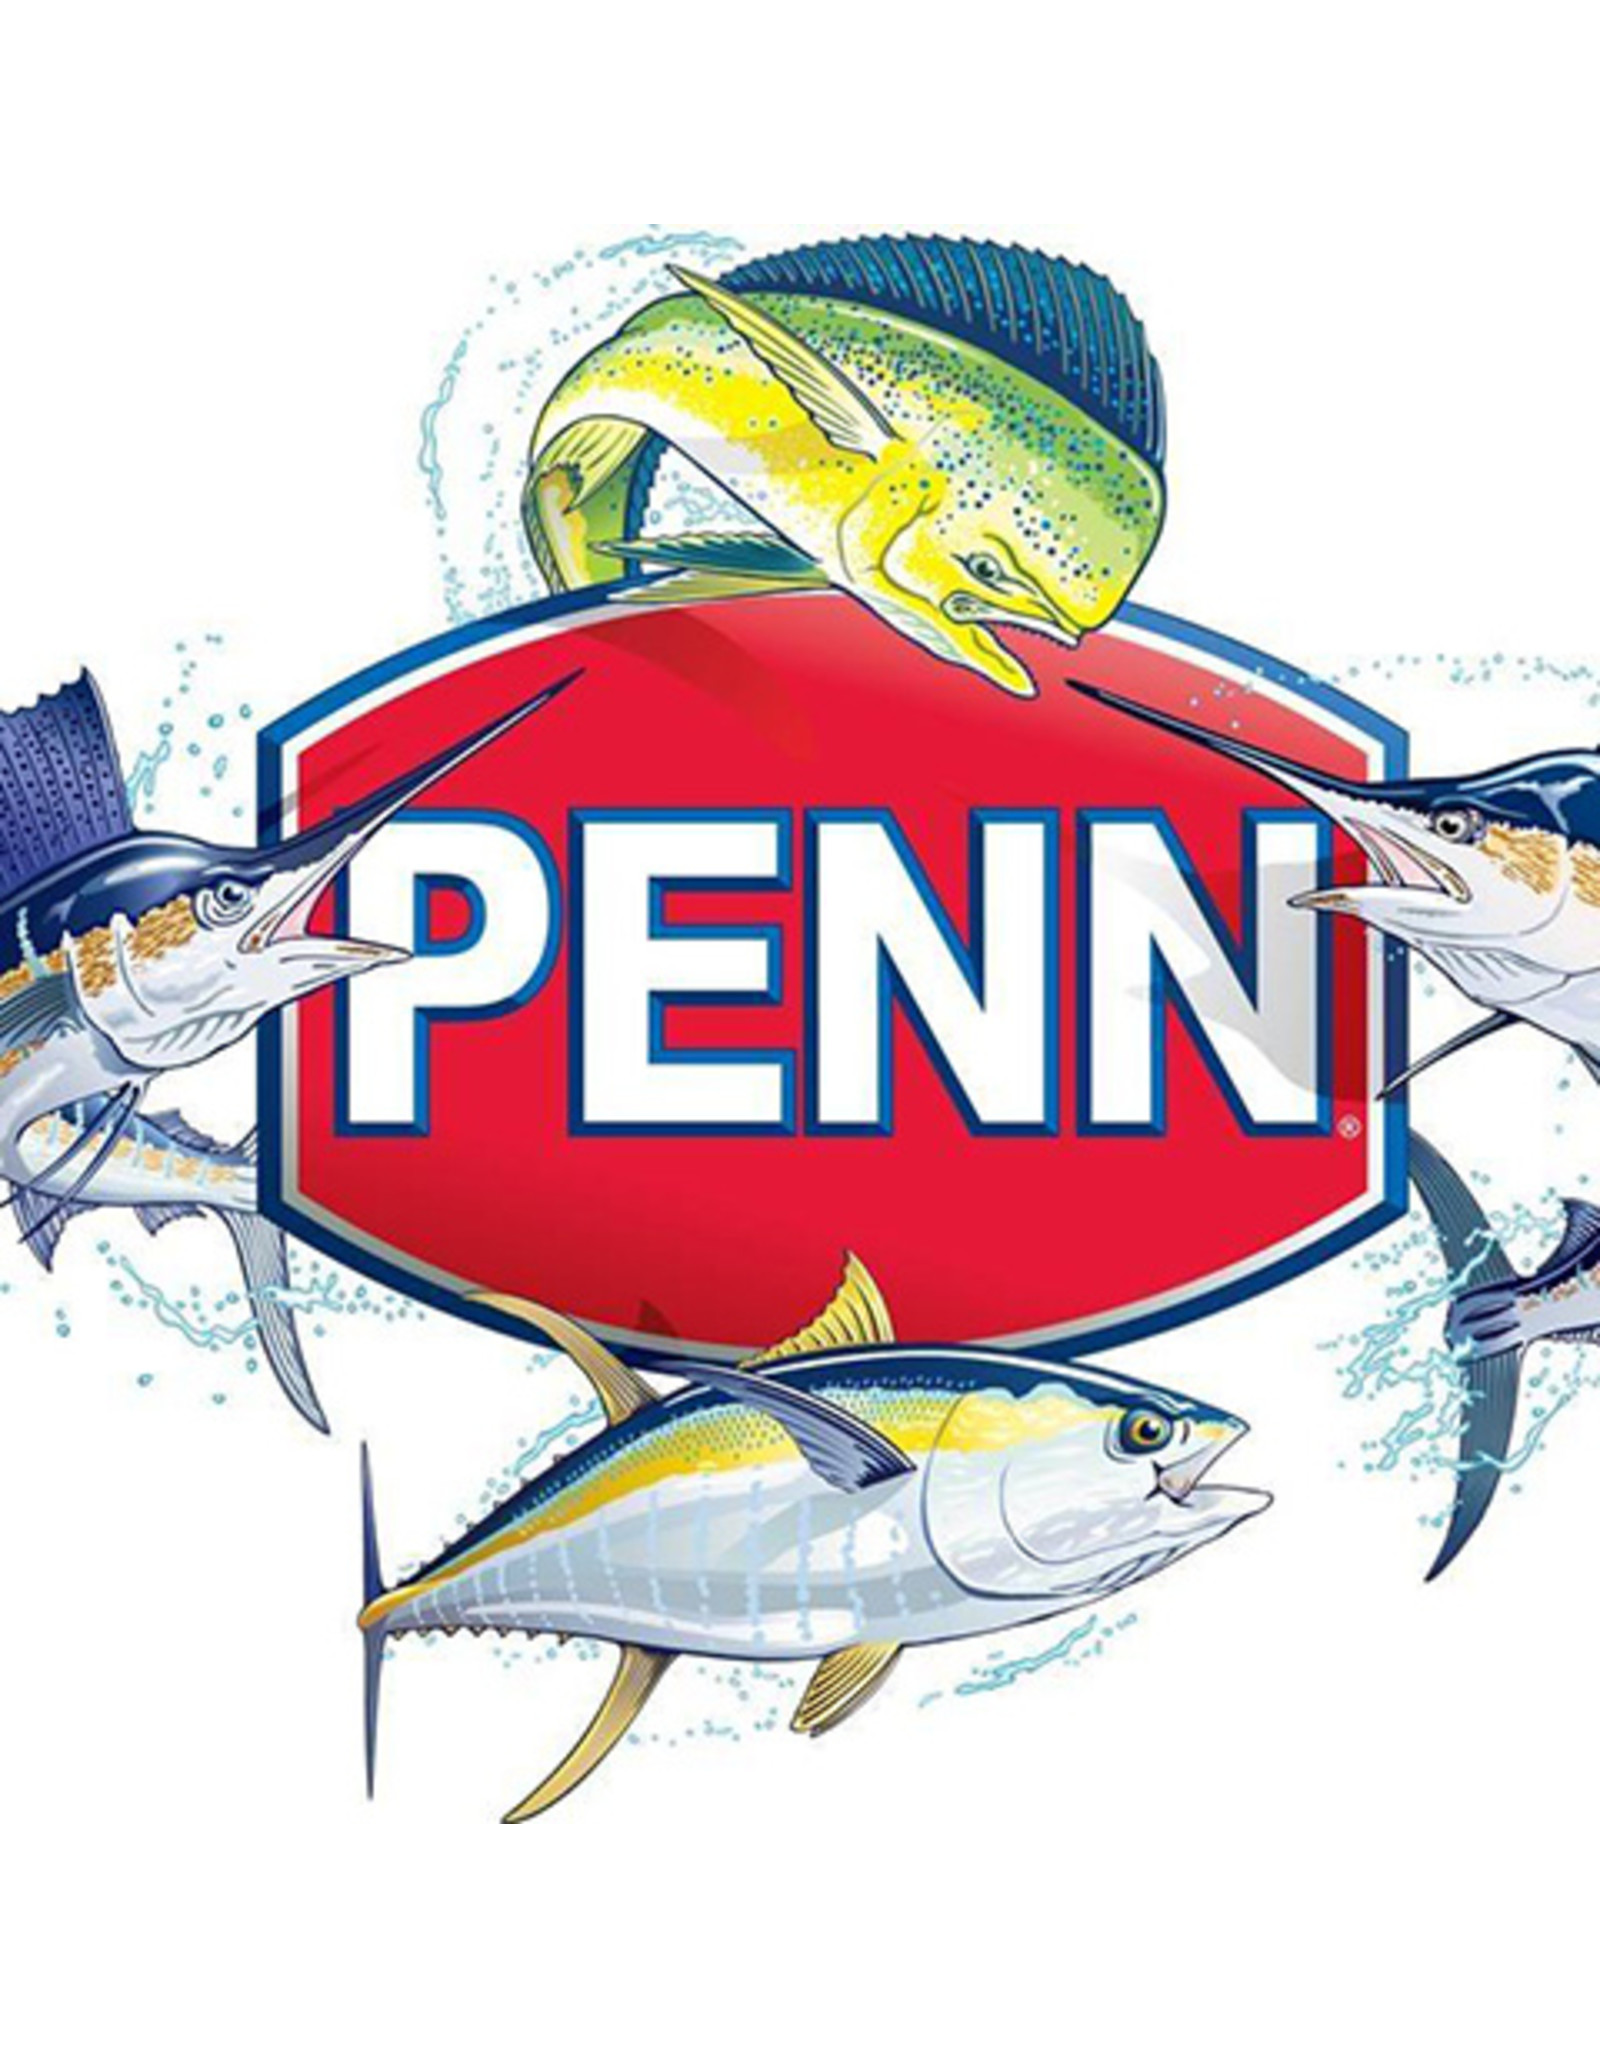 Penn 2L-SSVI2500  BODY SEAL